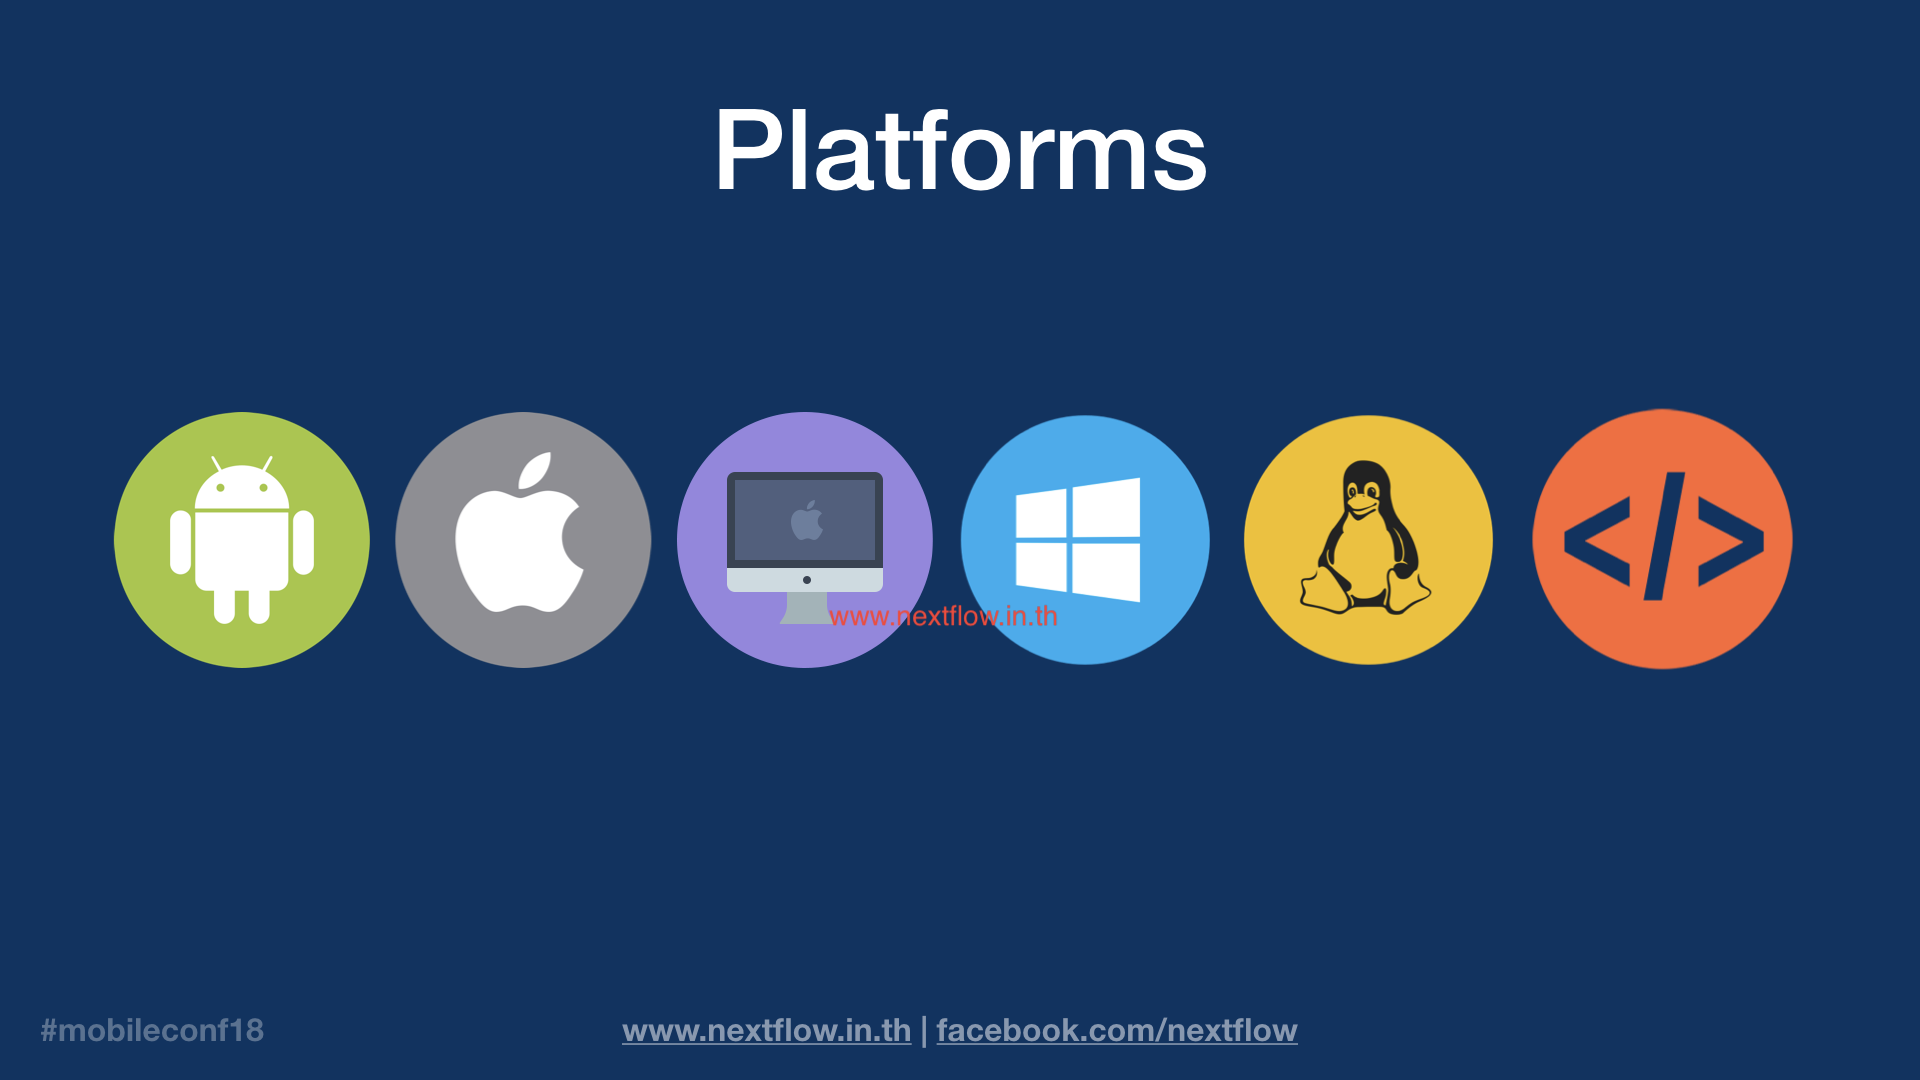 All platform mobile web and desktop